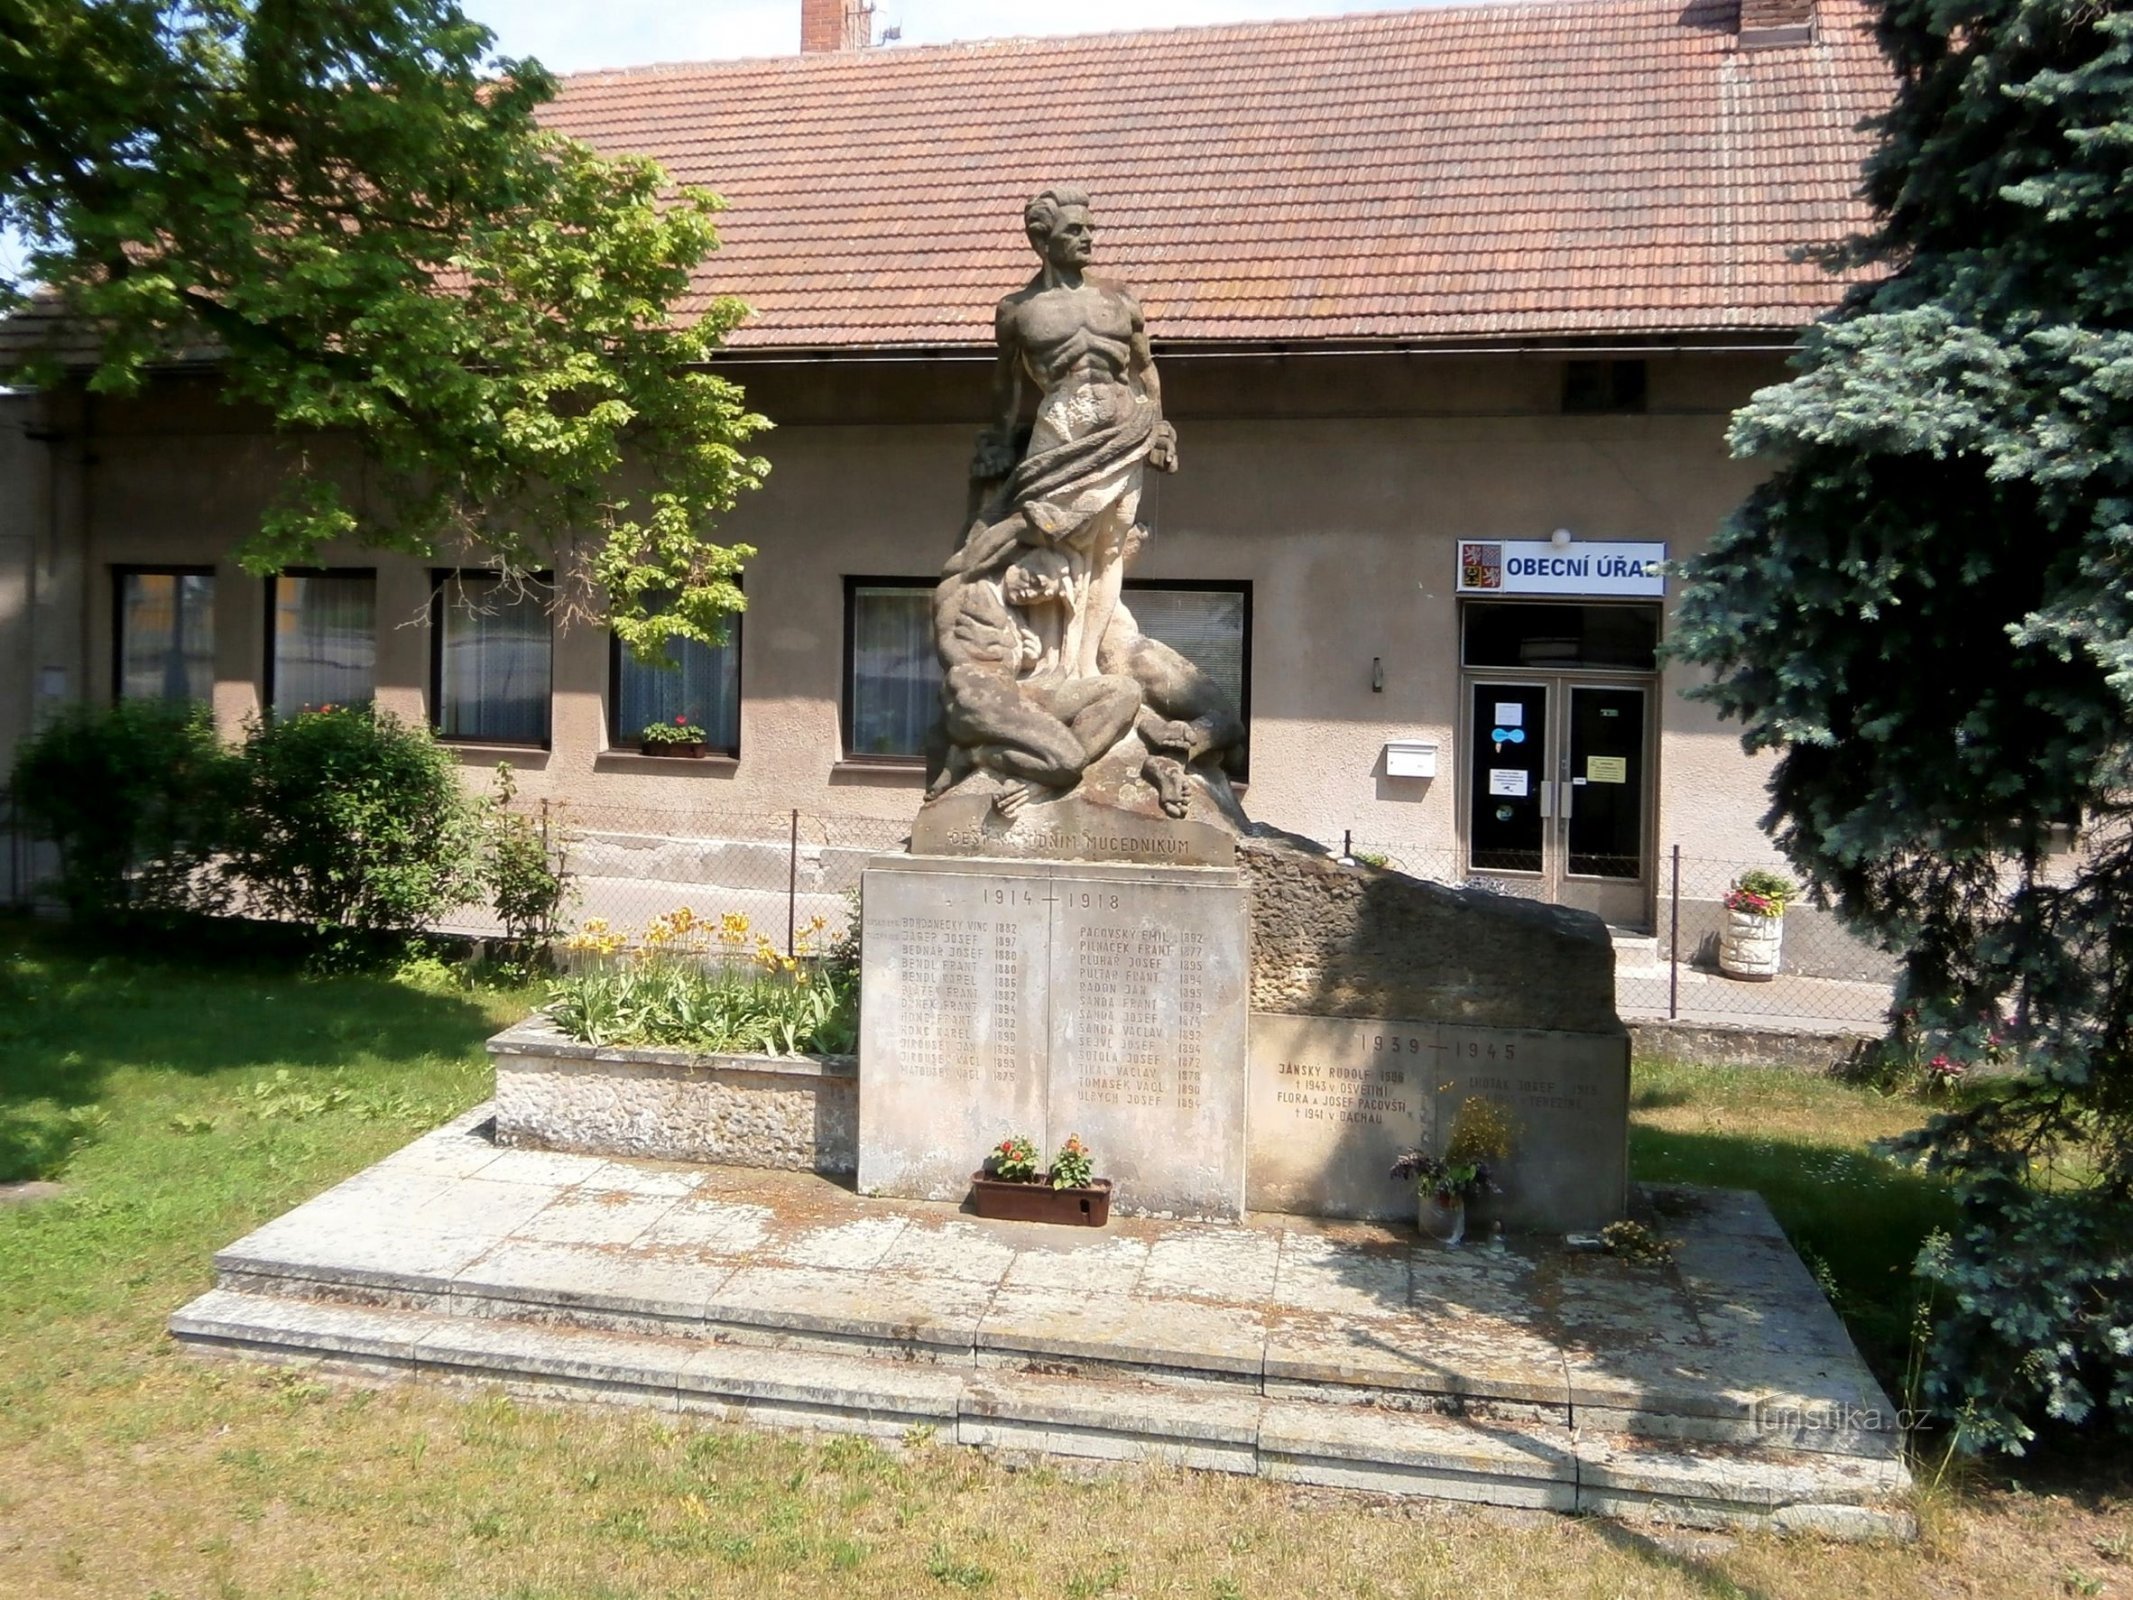 Ensimmäisen ja toisen maailmansodan uhrien muistomerkki (Stěžery, 1)